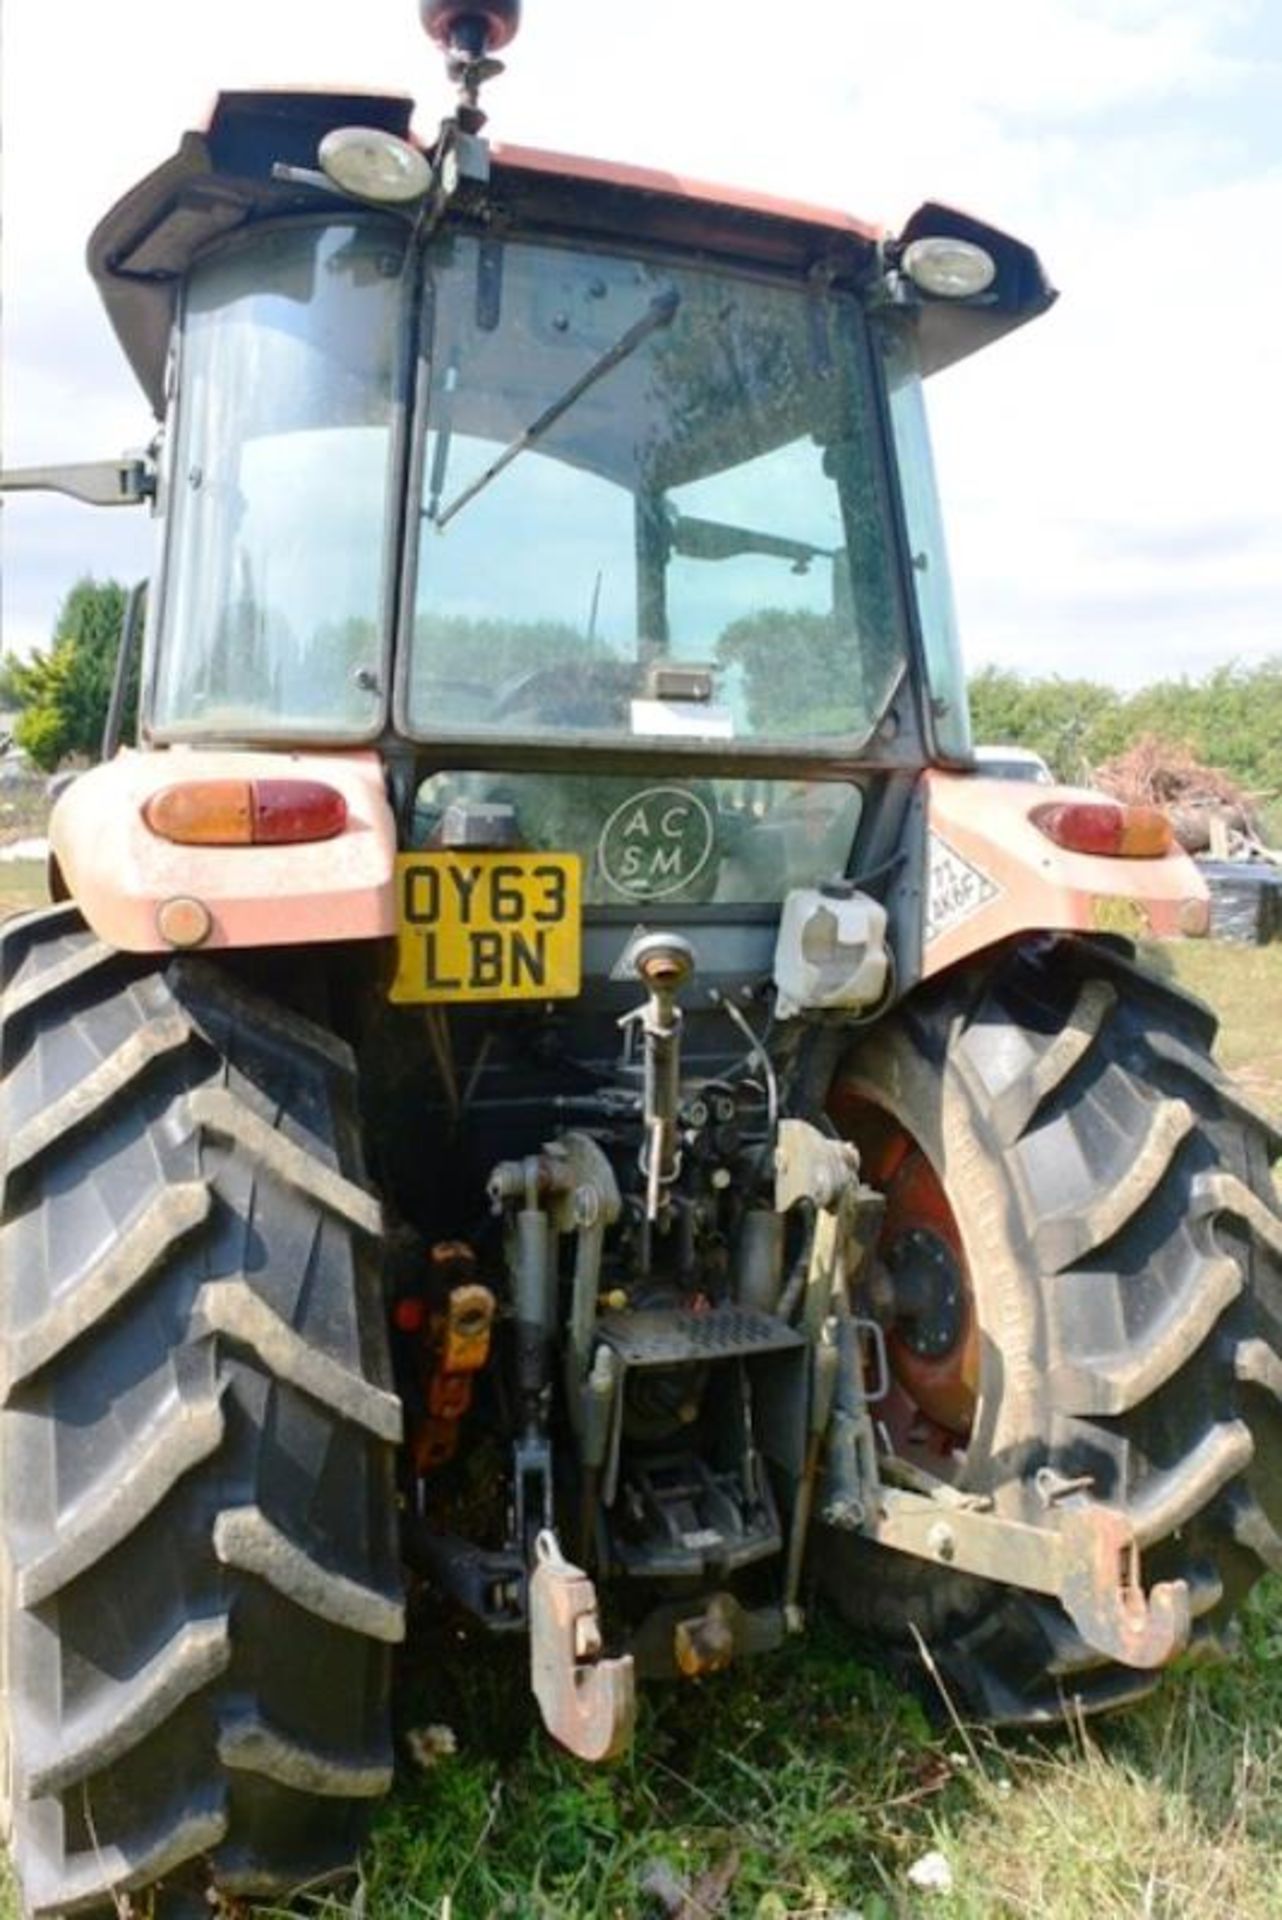 Kubota M6060 60 hp tractor, registration OY63 LBN (2013) with Kubota LA1154 front loader, Kubota - Image 5 of 22